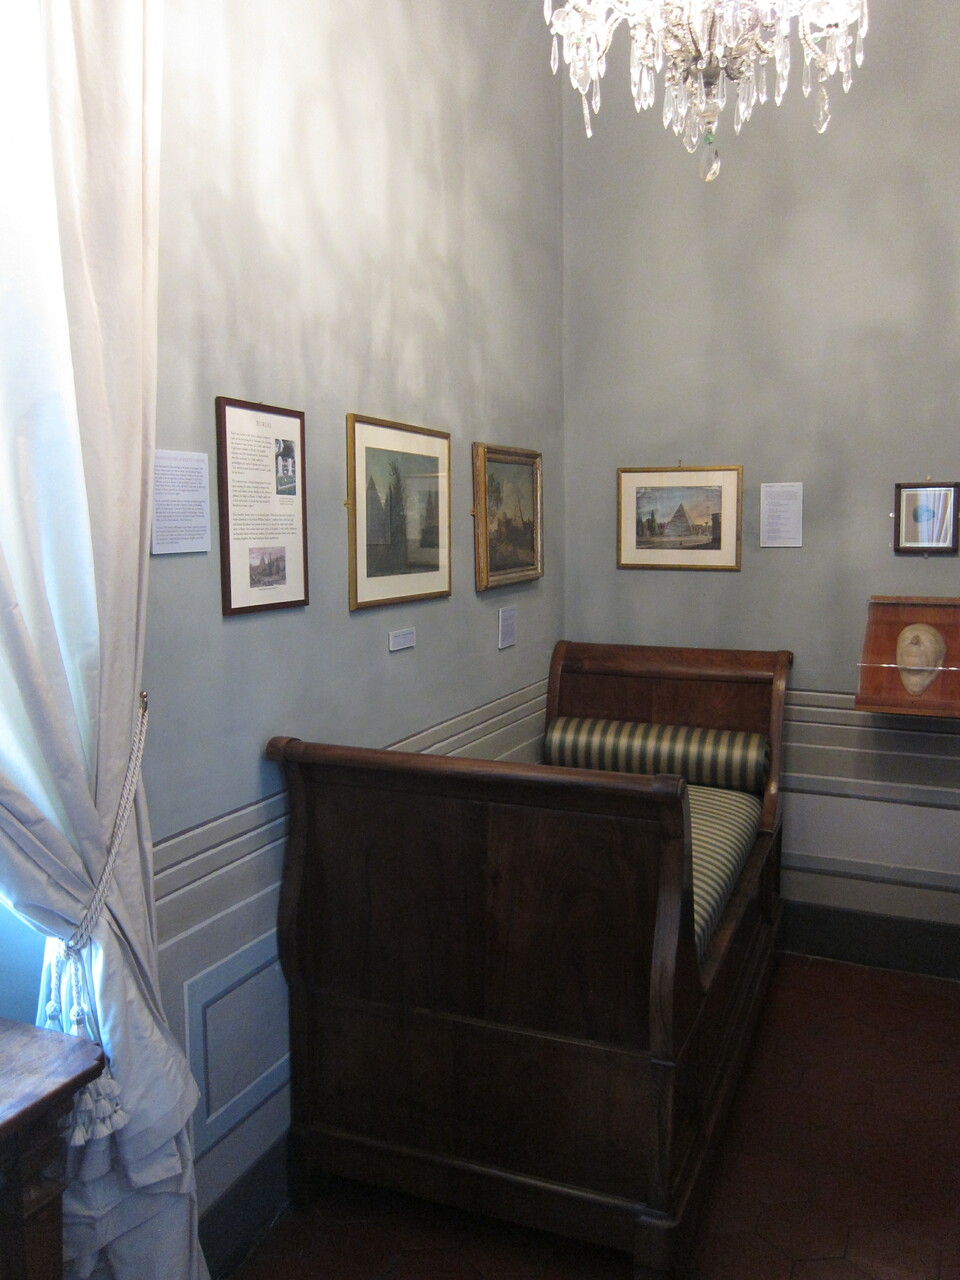 Keats Room